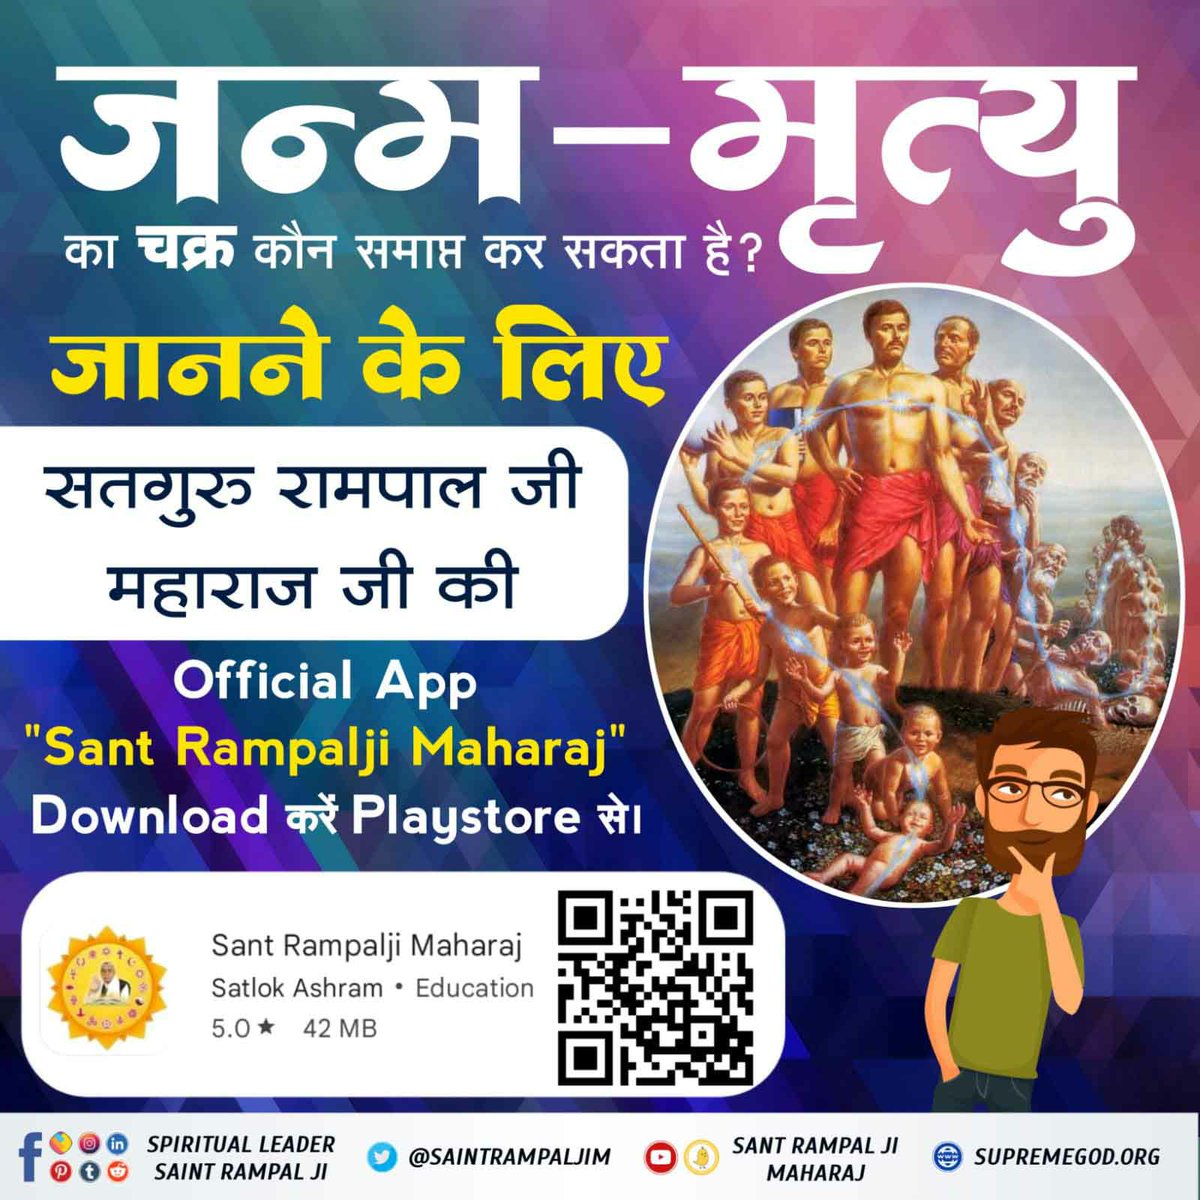 कौन है परमात्मा, कैसा है, कैसे मिलता है, किसने देखा है, कहां रहता है? ऐसे अनेकों प्रश्नों का उत्तर जानने के लिए जगतगुरु तत्वदर्शी संत रामपाल जीमहाराज जी की Official App 'Sant Rampalji Maharaj' Download करें Playstore से।
#Sant_Rampalji_Maharaj_App
AvailableOnPlaystore @satlok888